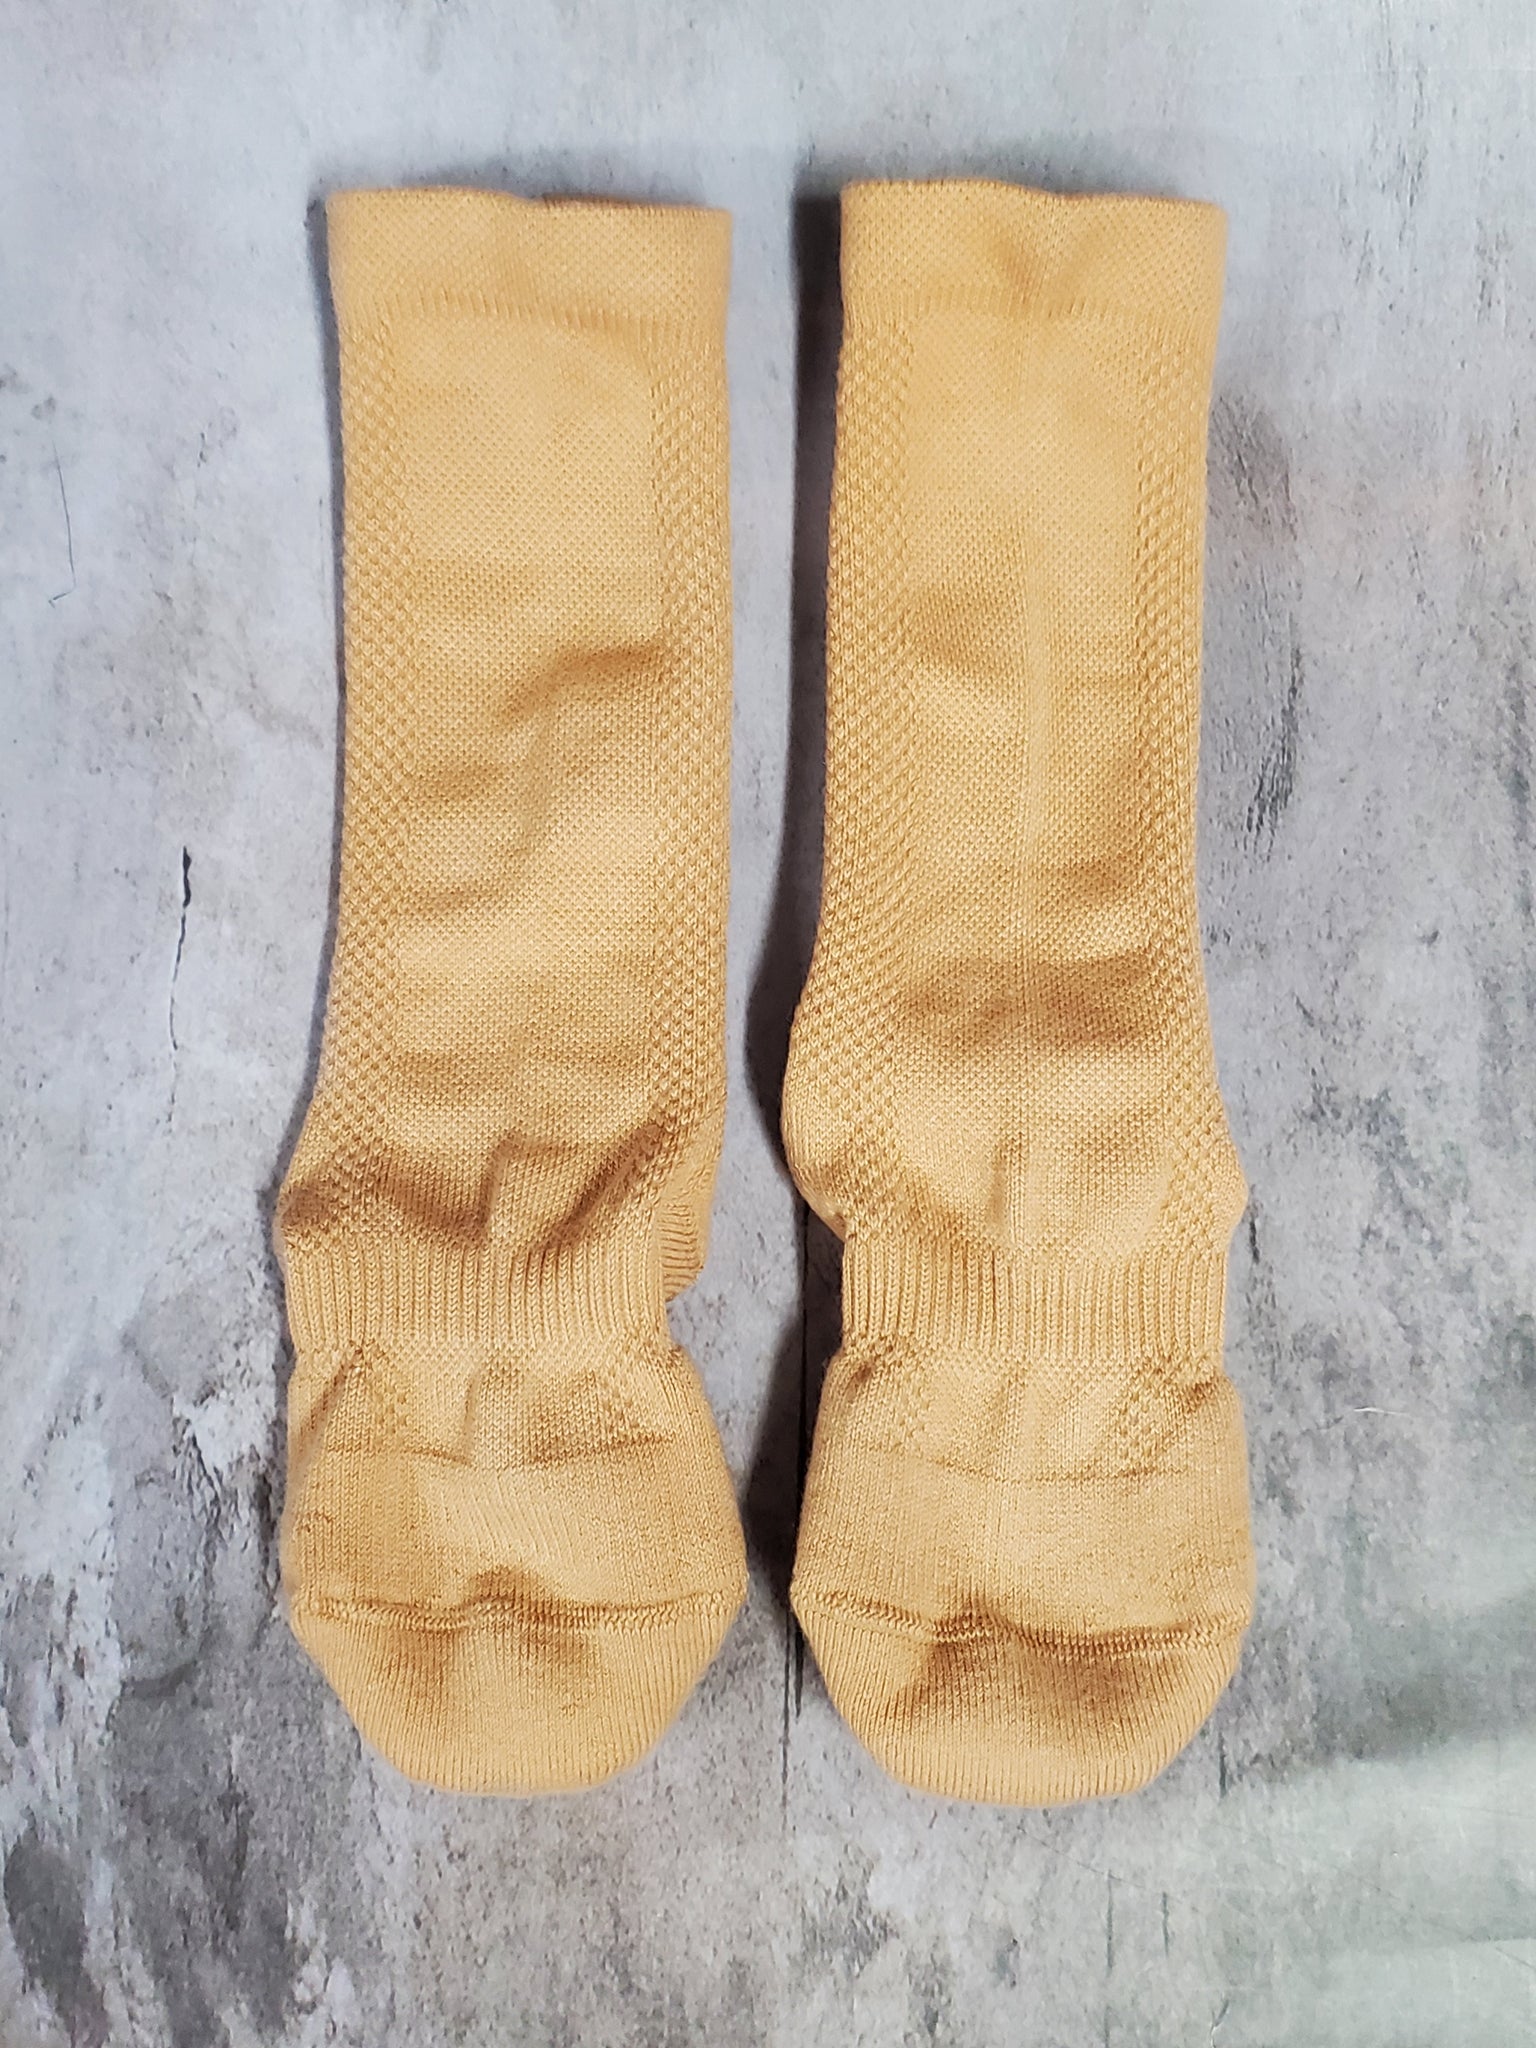 Bloch Dance Socks